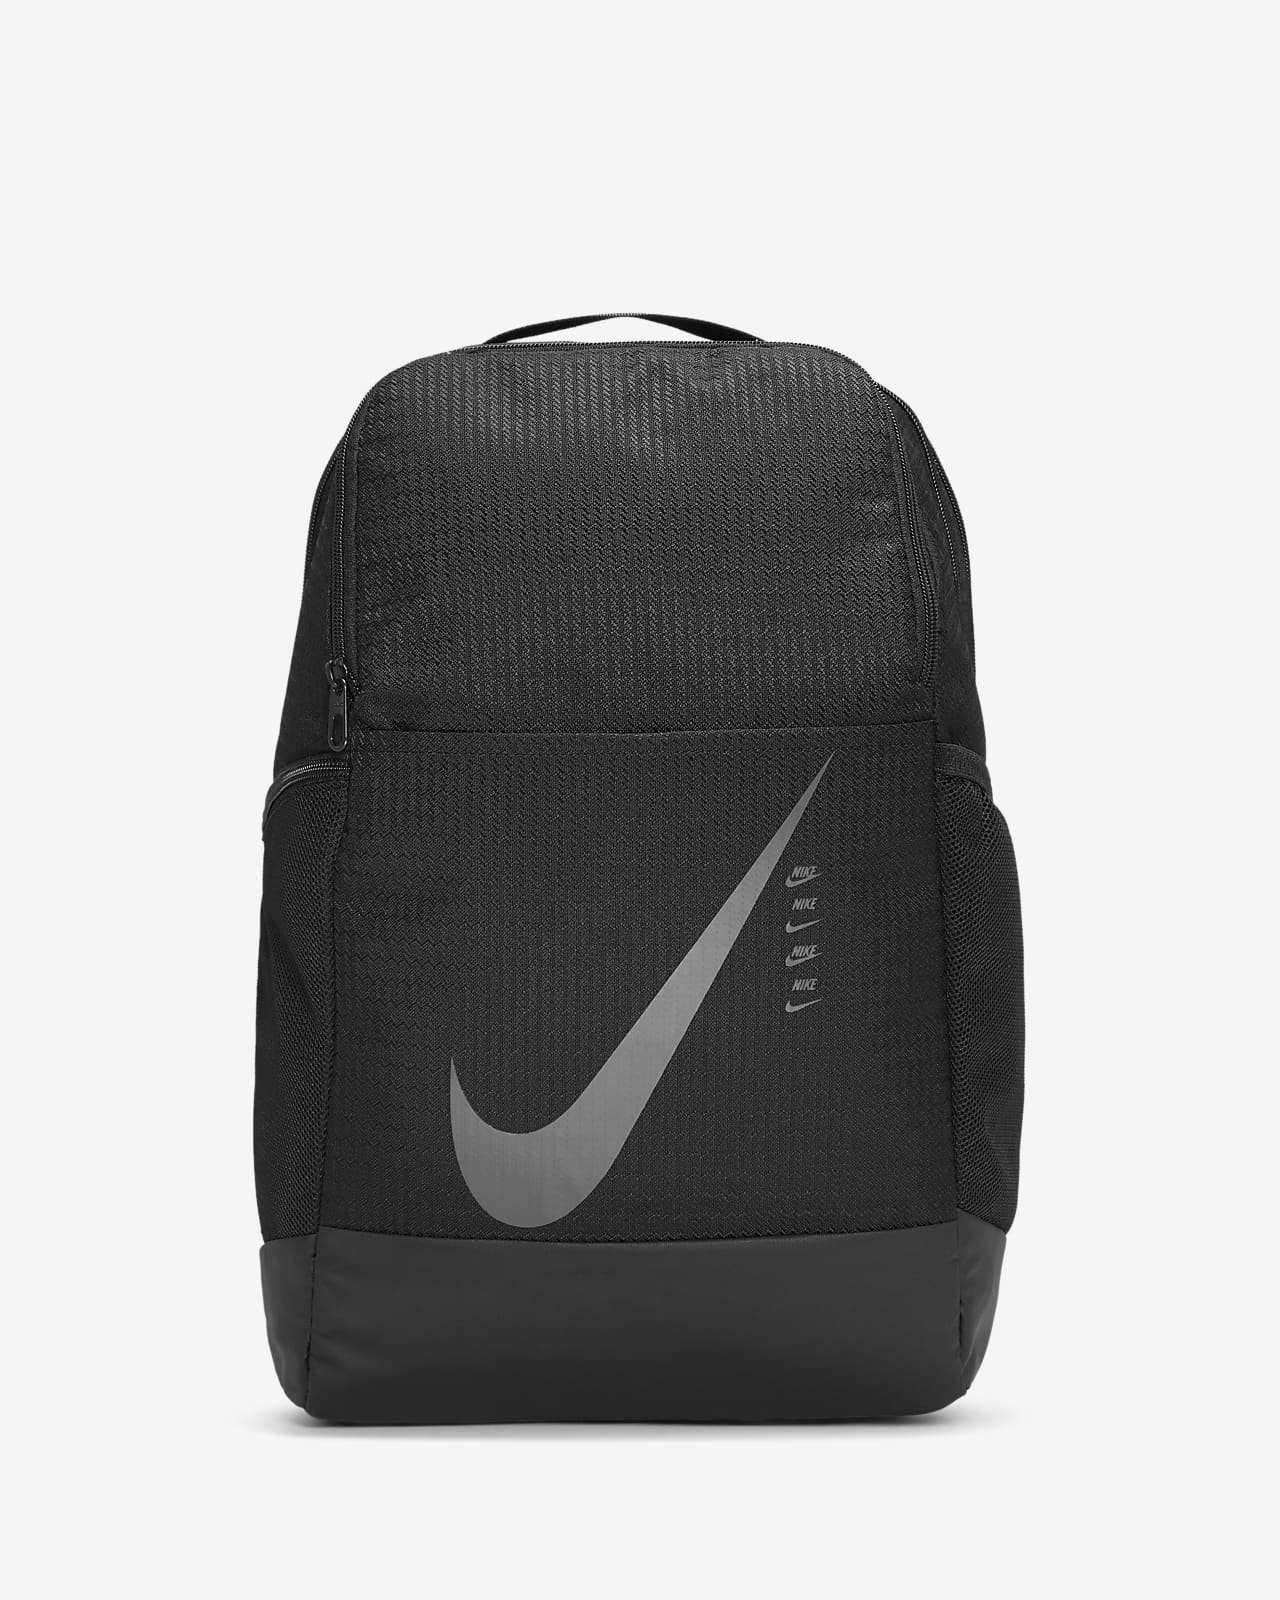 nike brasilia 9.0 backpack